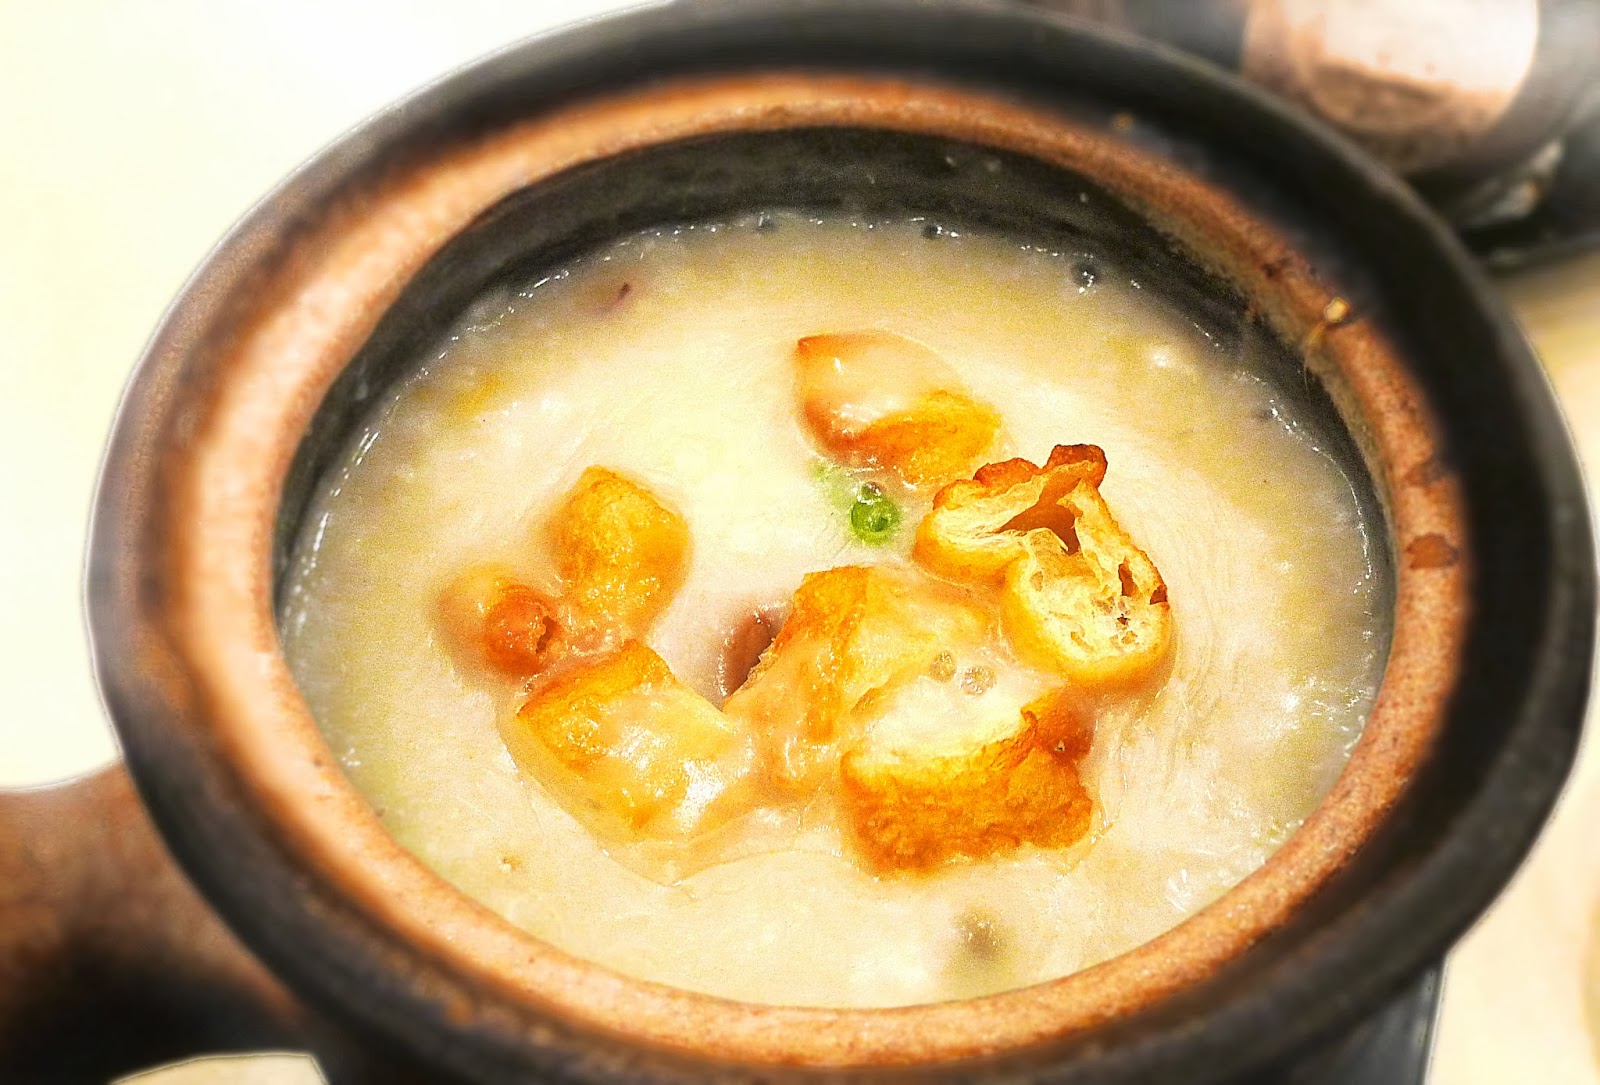 Hong Kong style porridge